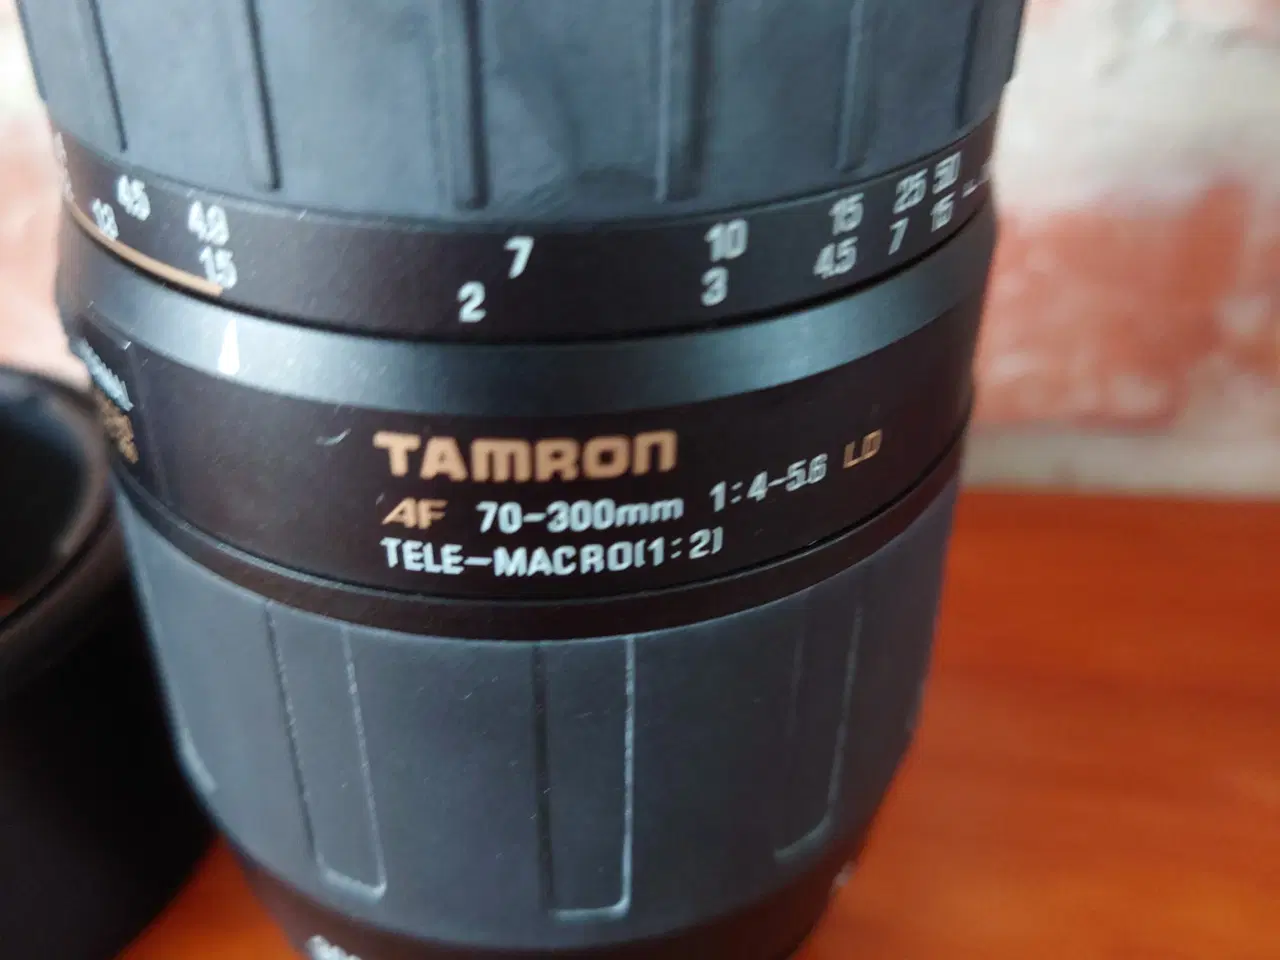 Billede 4 - Tamron af 70-300mm 1_4-5.6 LD tele-macro(1:2) FX